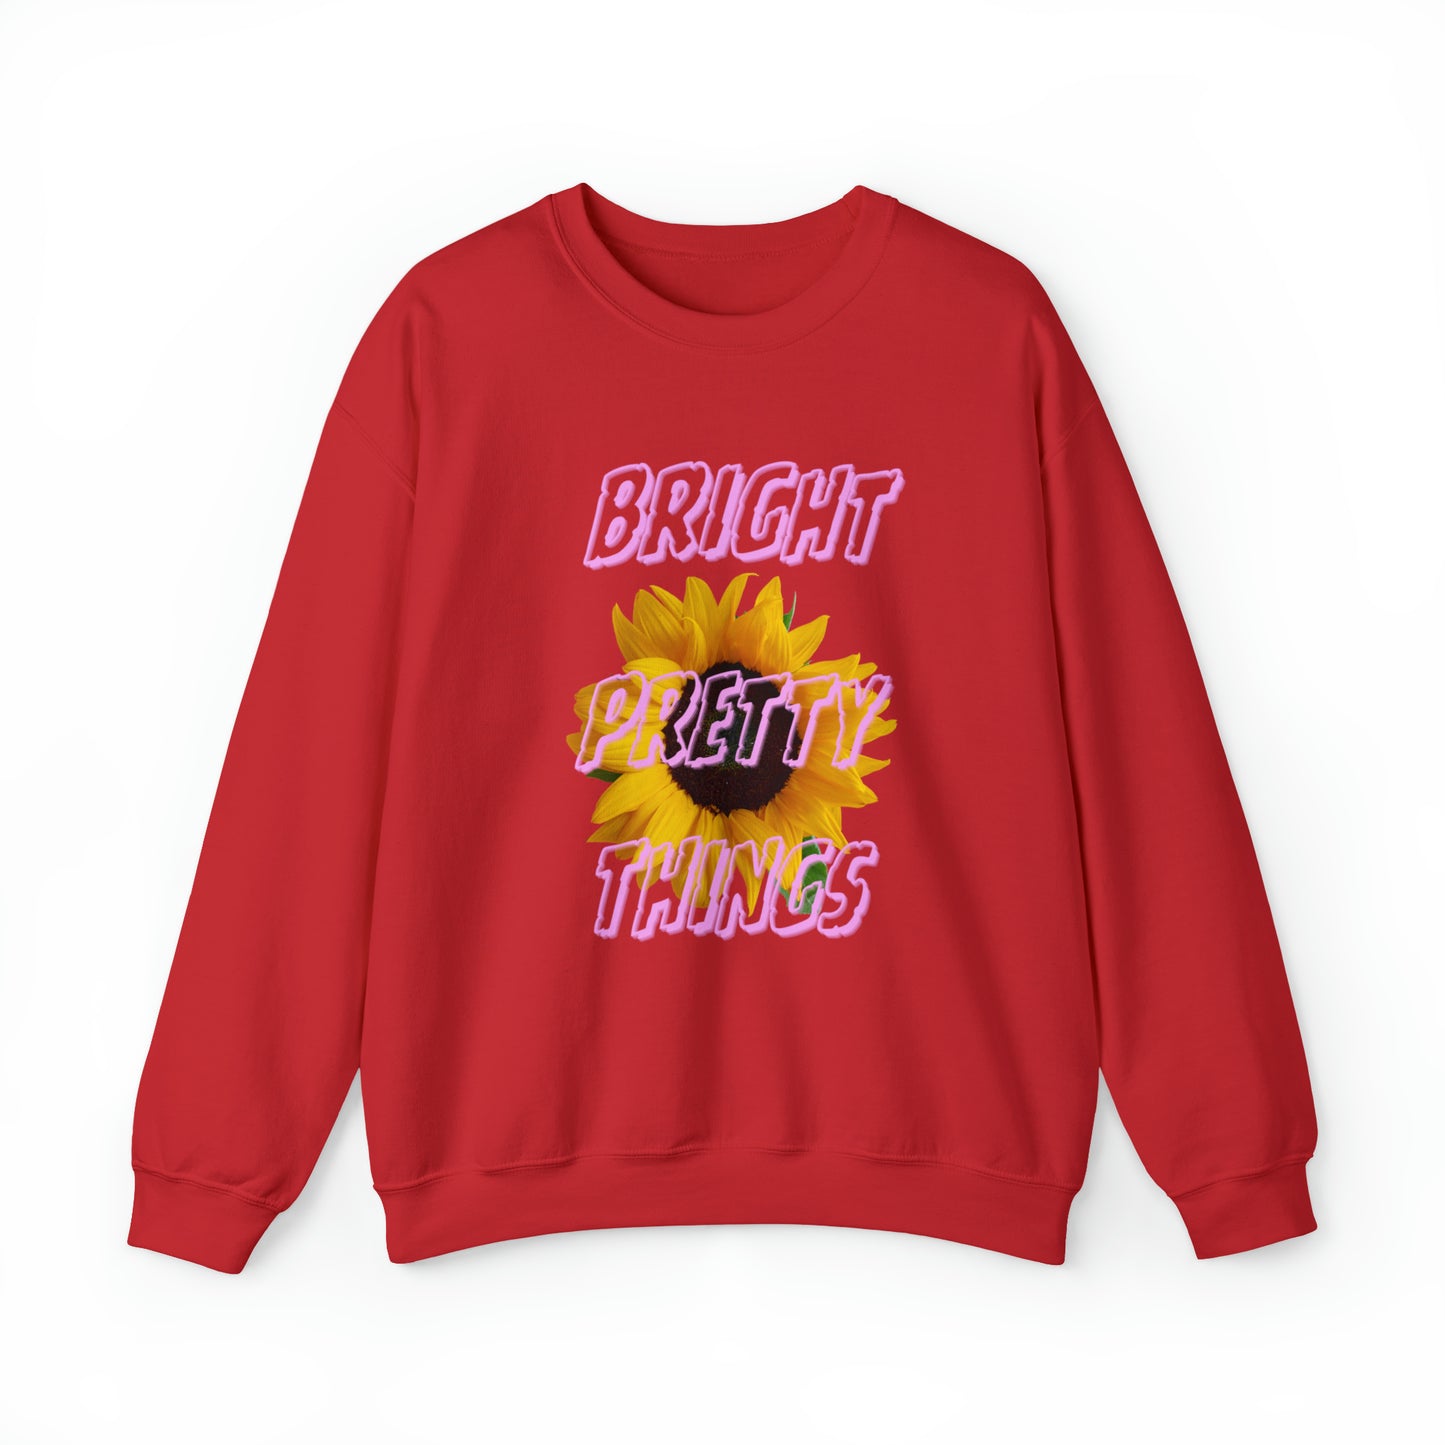 Bright Pretty Things Sunflower Design Sweatshirt Gift